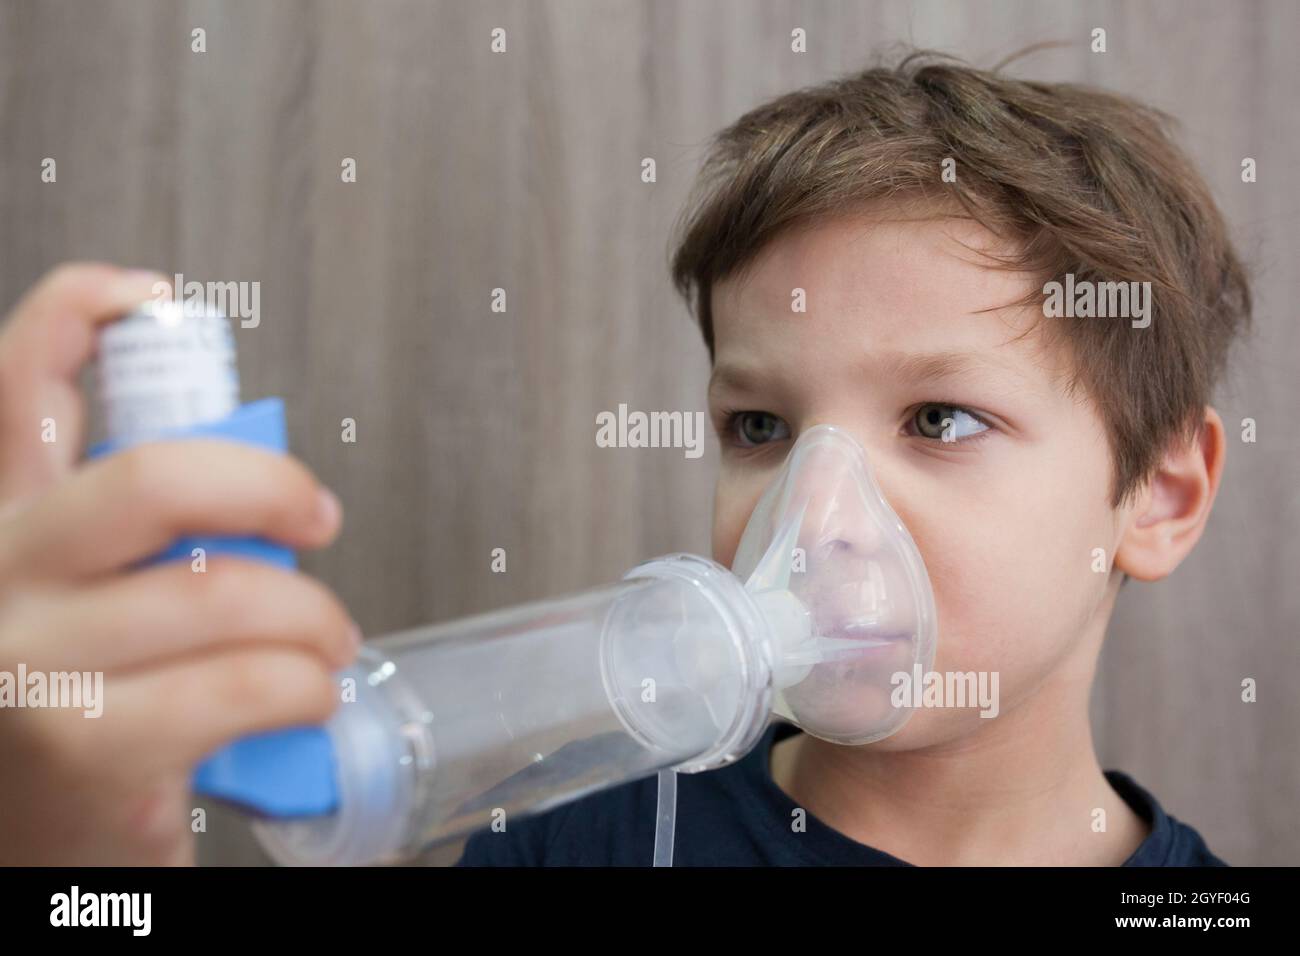 Enfant à L'aide De L'inhalateur Avec L'entretoise Image stock - Image du  inhalation, expression: 35340565